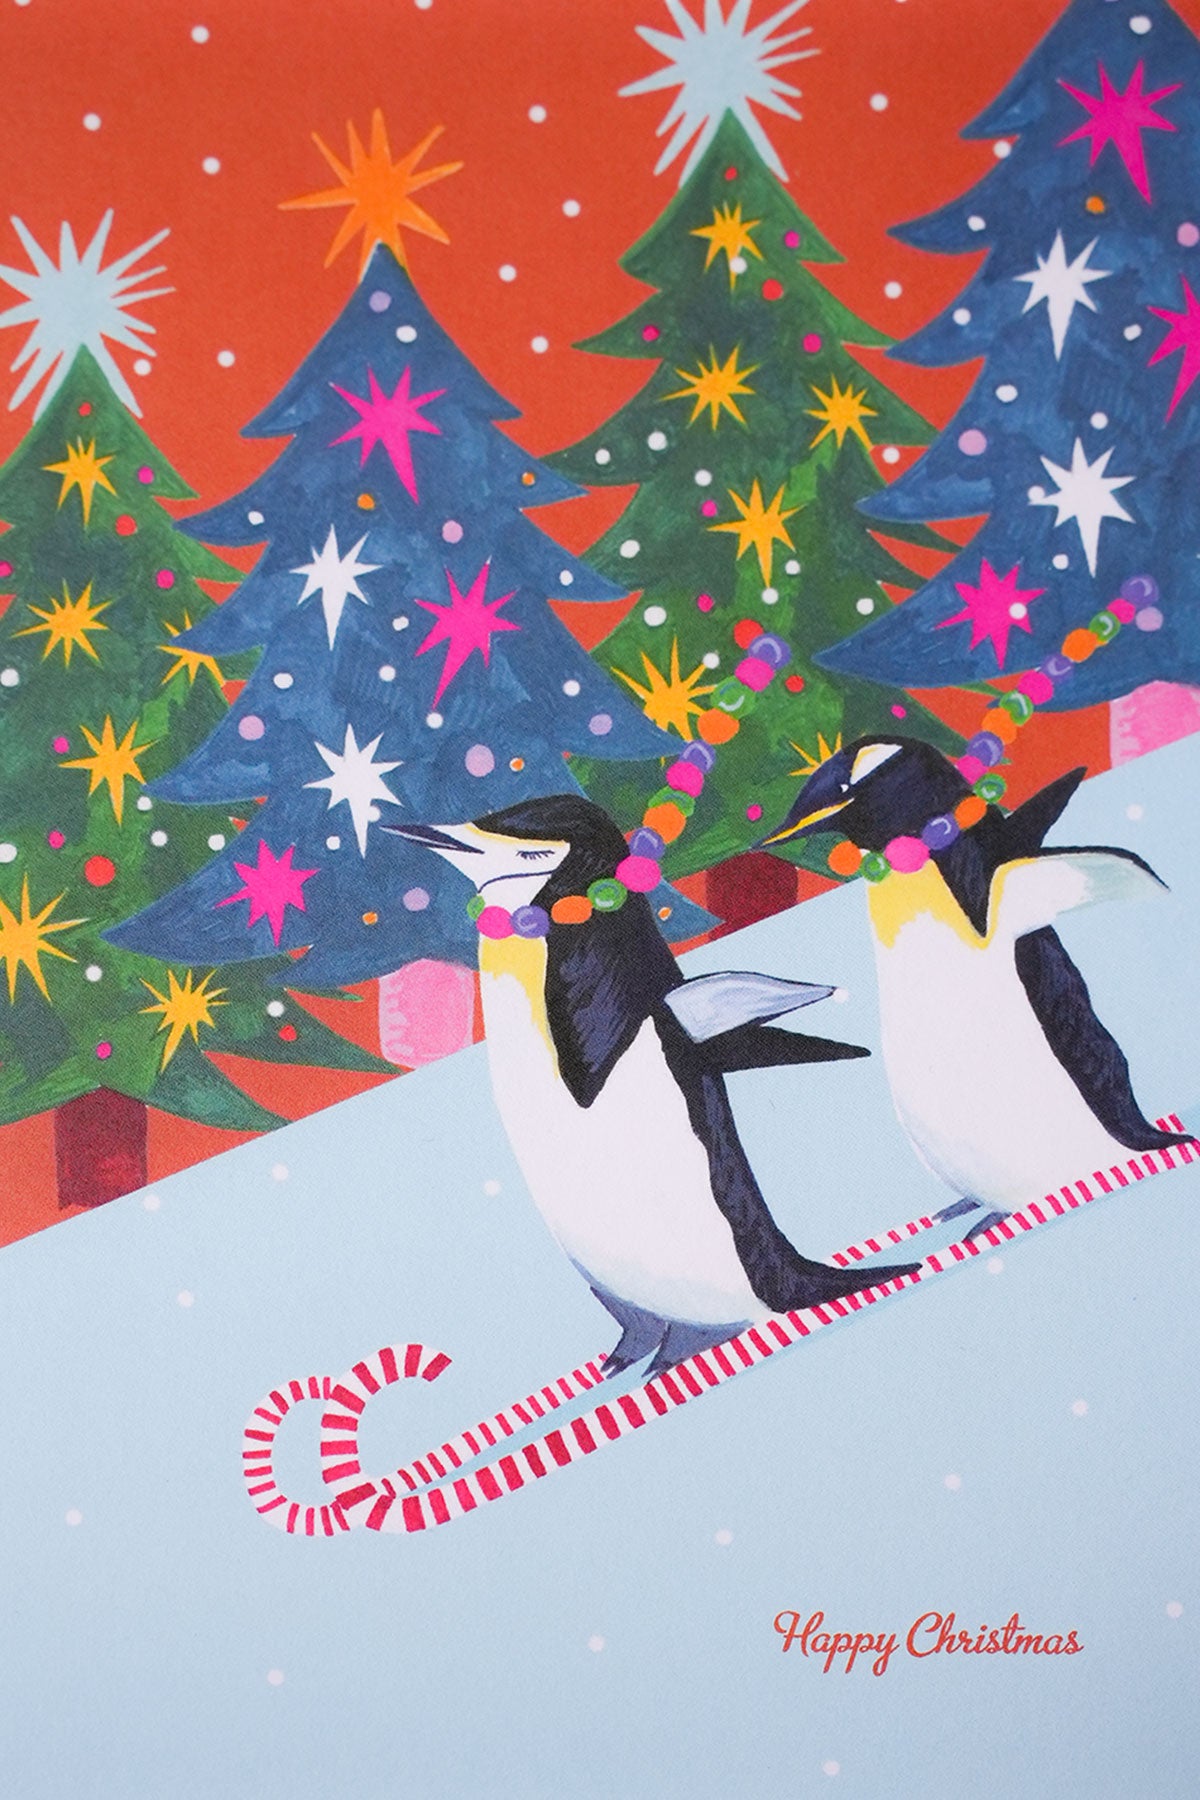 Weihnachtskarte Pinguine